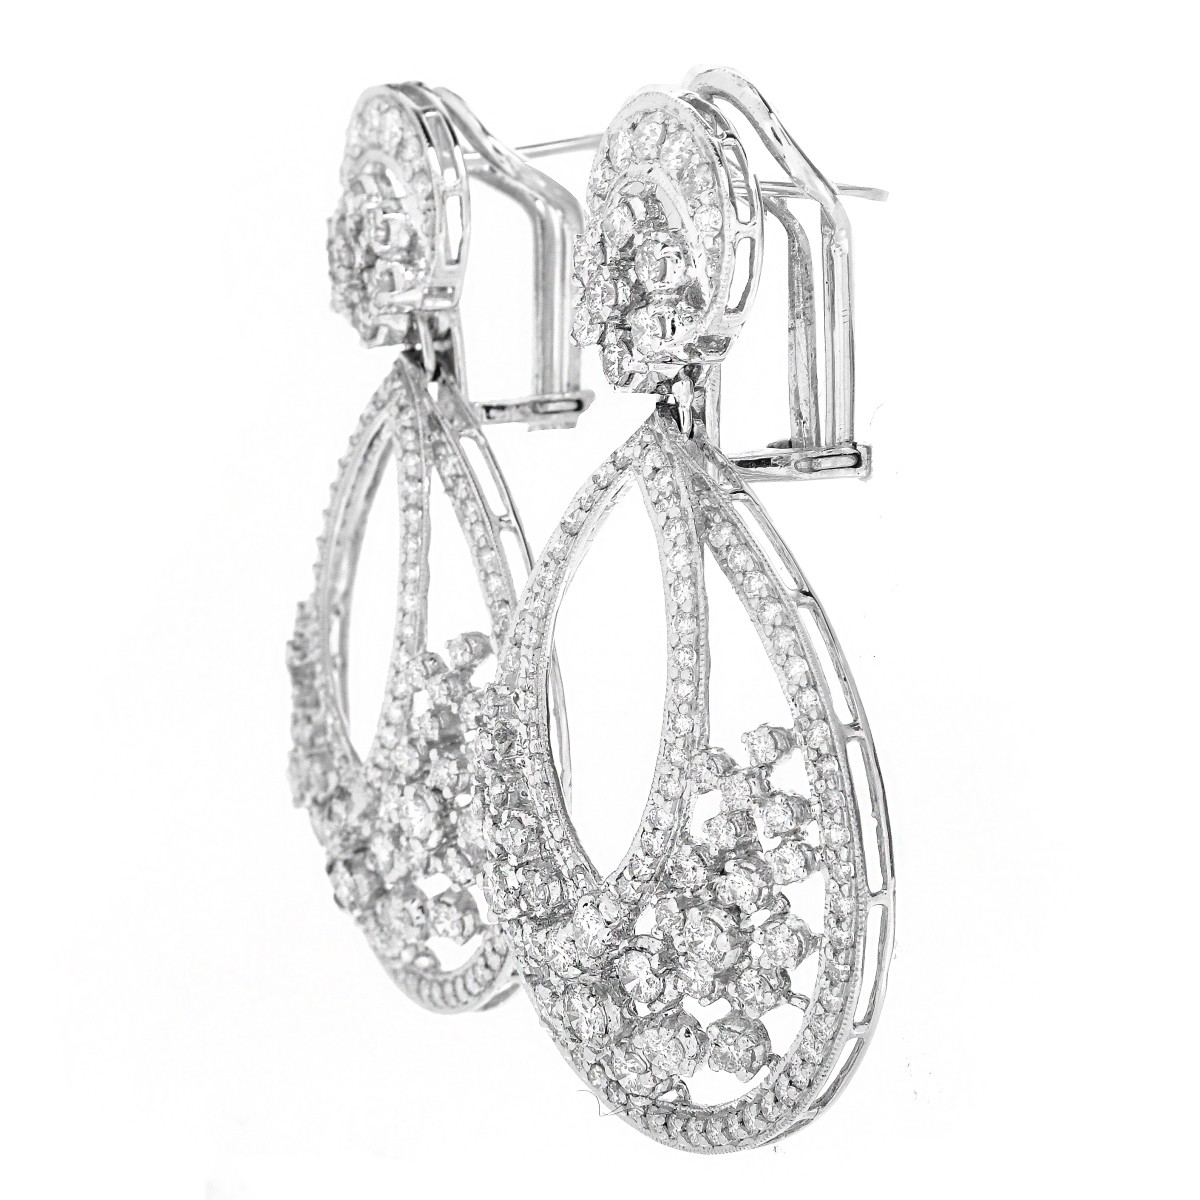 Van Cleef & Arpels style Diamond Earrings